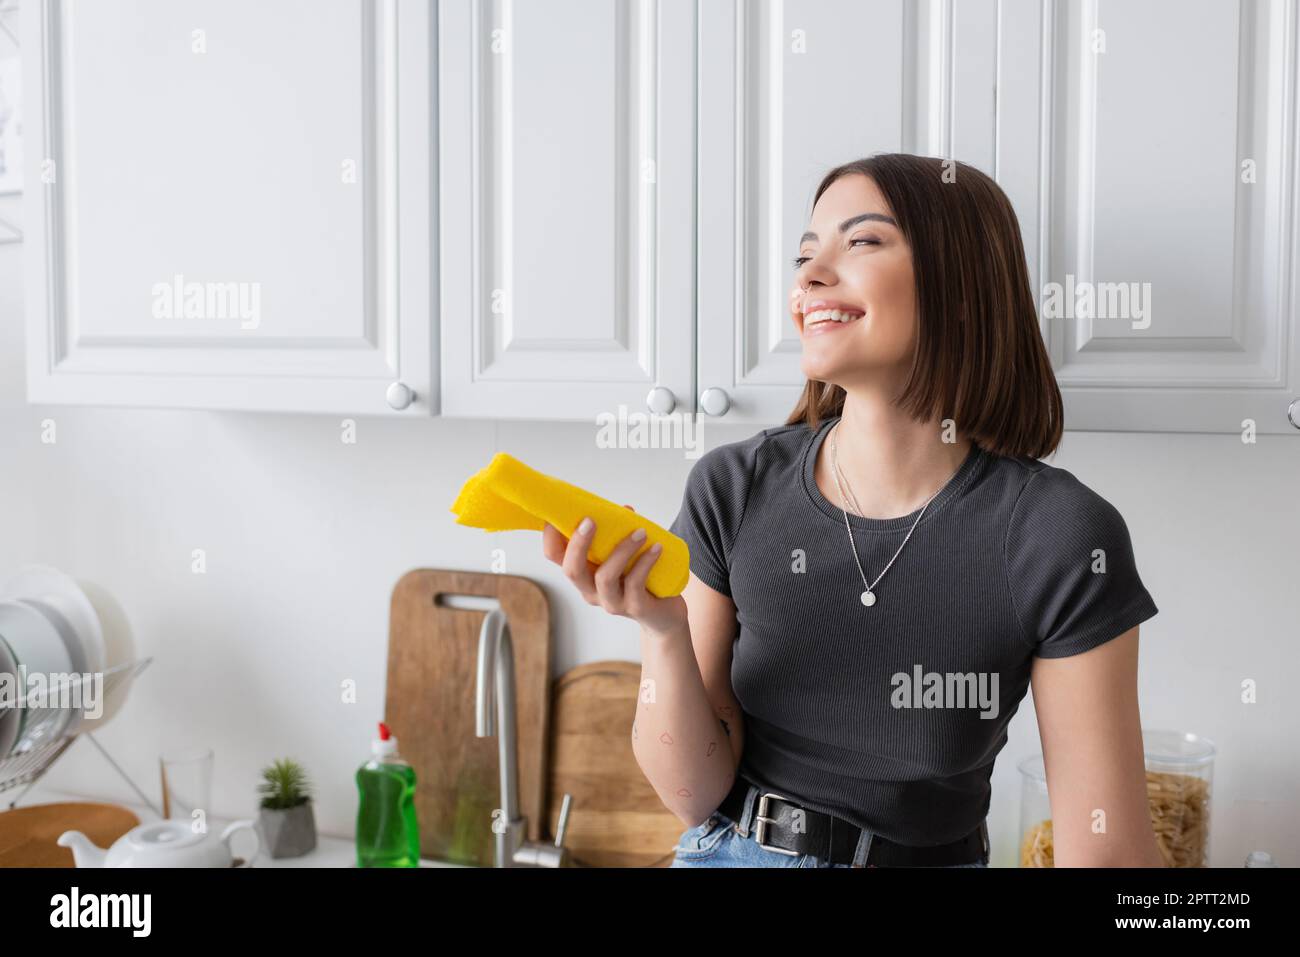 Lächelnde brünette Frau, die einen Lappen hält, während sie zu Hause in der Küche steht, Stockbild Stockfoto